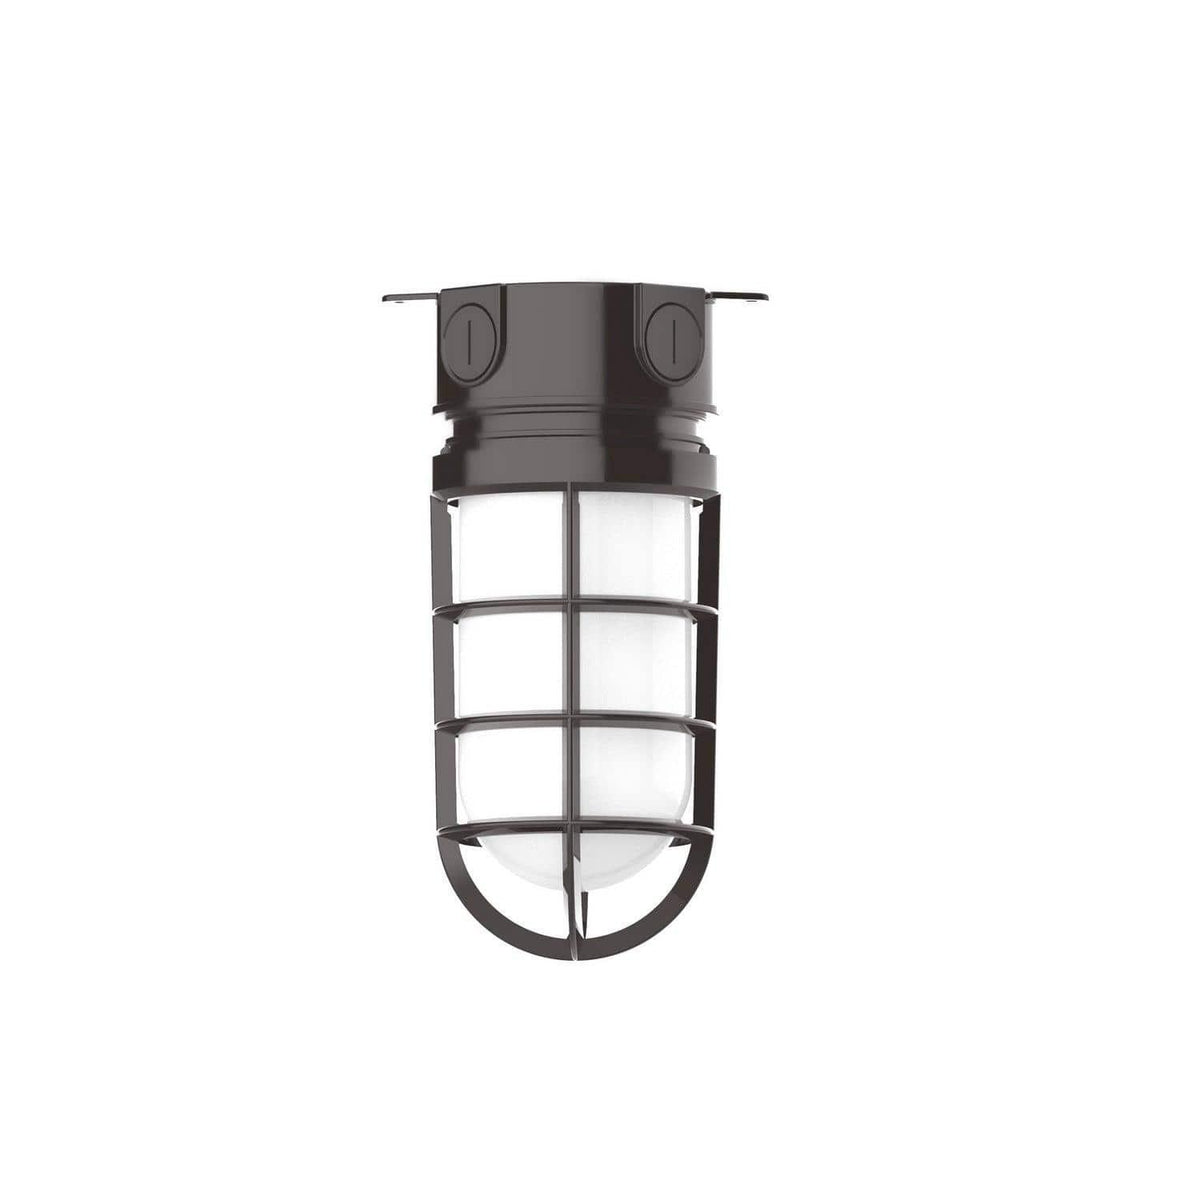 Montclair Light Works - Vaportite 5 1/2 Inch Flush Mount Ceiling Light - FMC050-51 | Montreal Lighting & Hardware